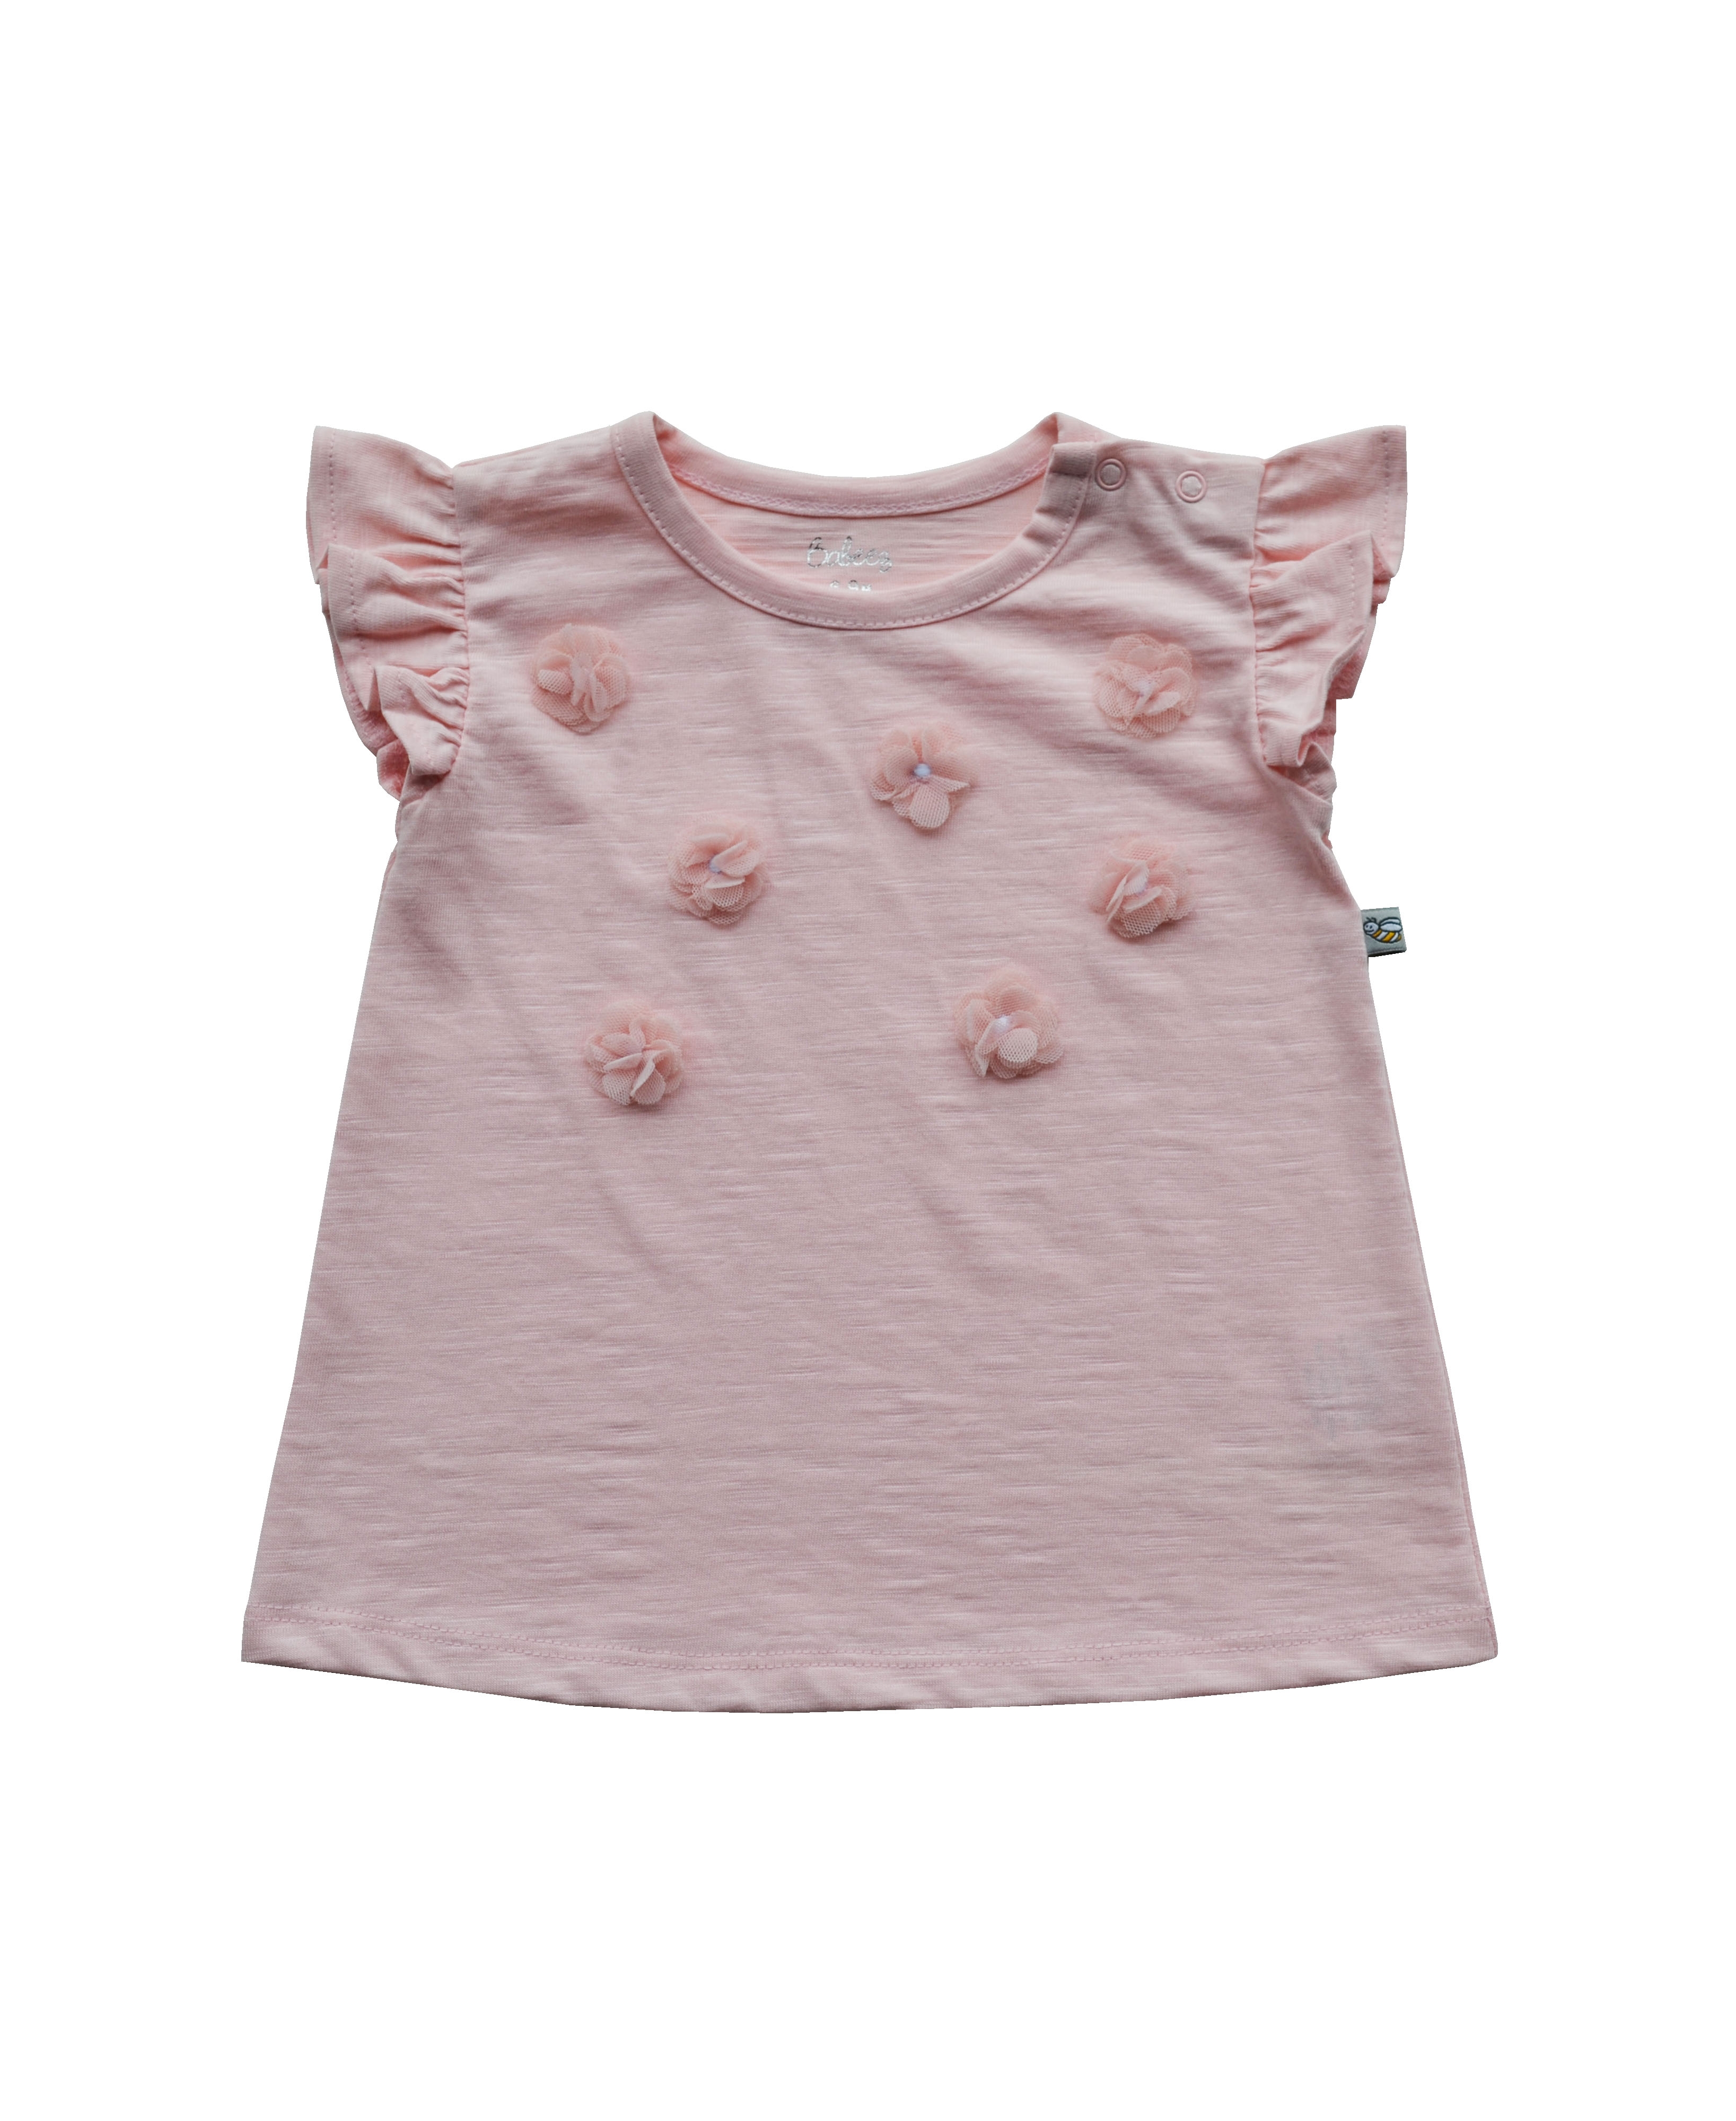 Babeez | Girls Pink Top with Flower Applique (Slub Jersey) undefined